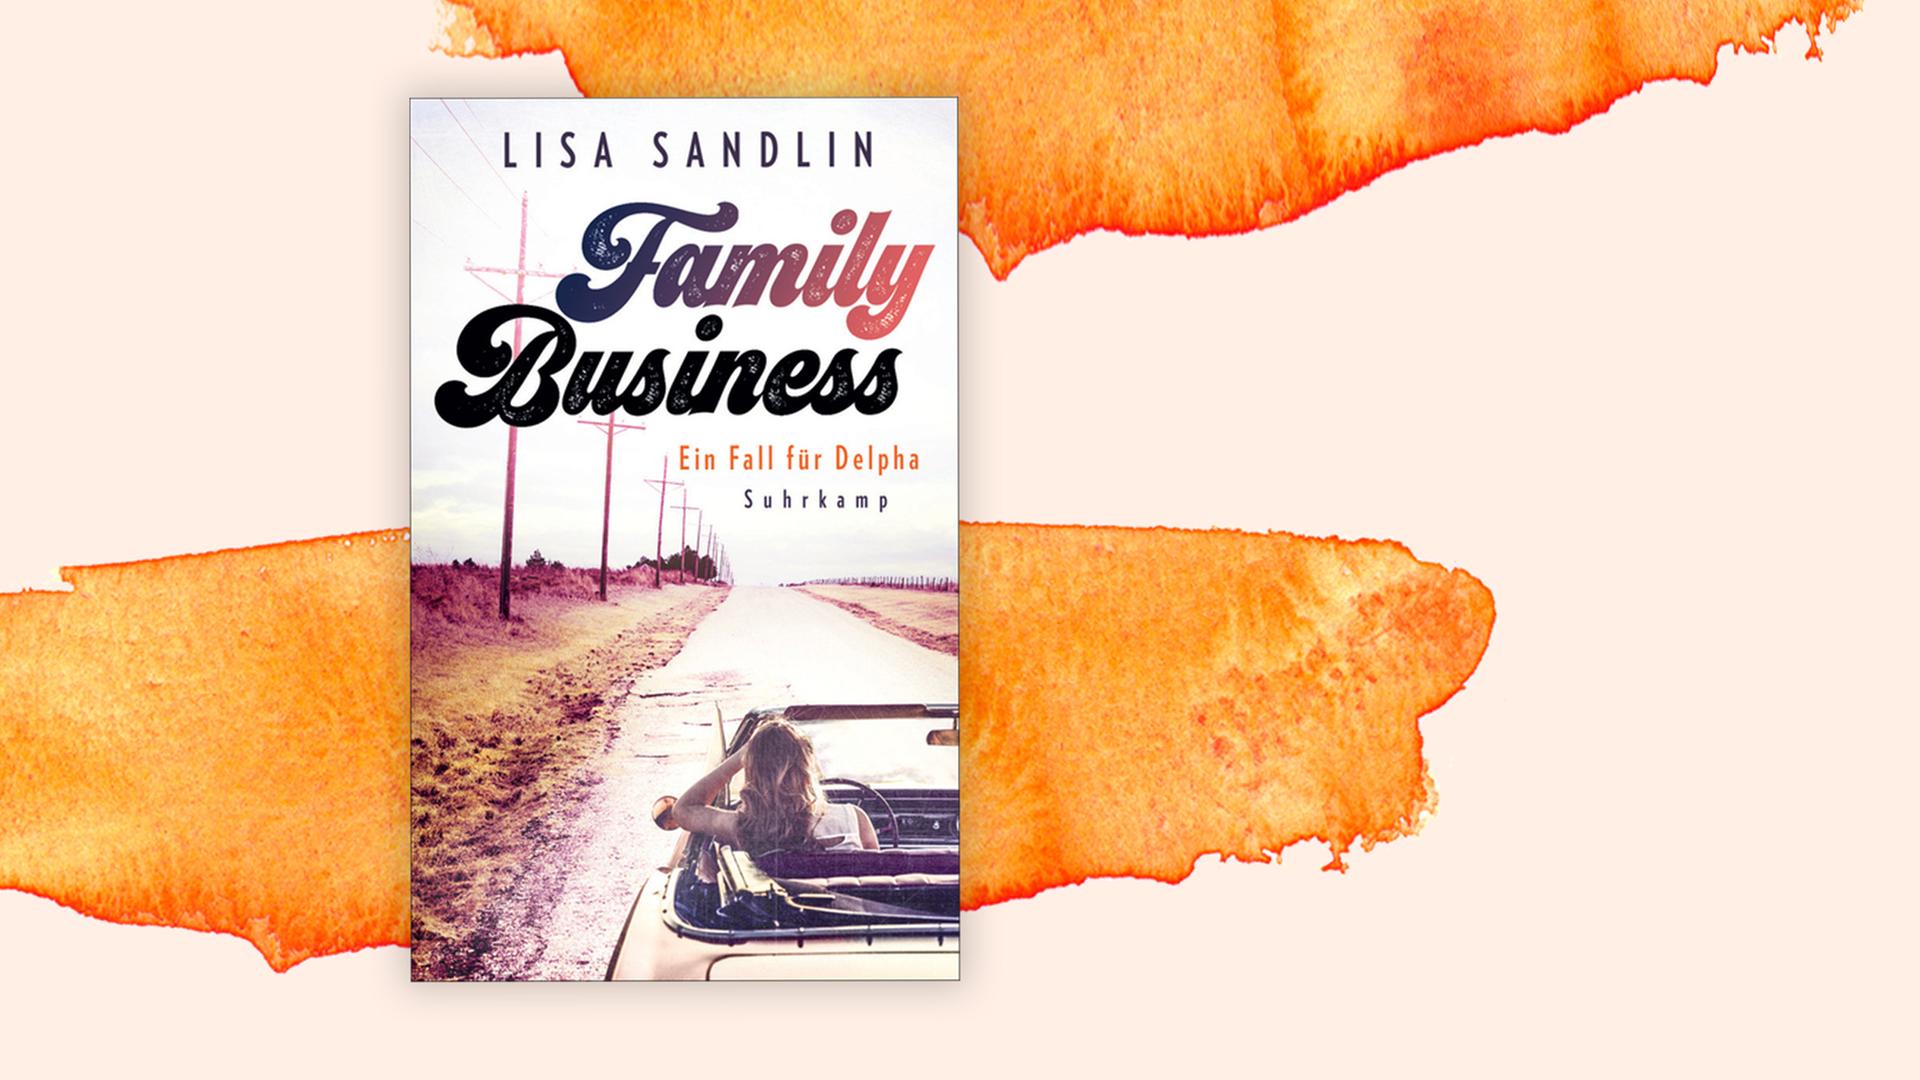 Buchcover von Lisa Sandlin : "Family Business - Ein Fall für Delpha" auf pastellfarbenen Hintergrund.